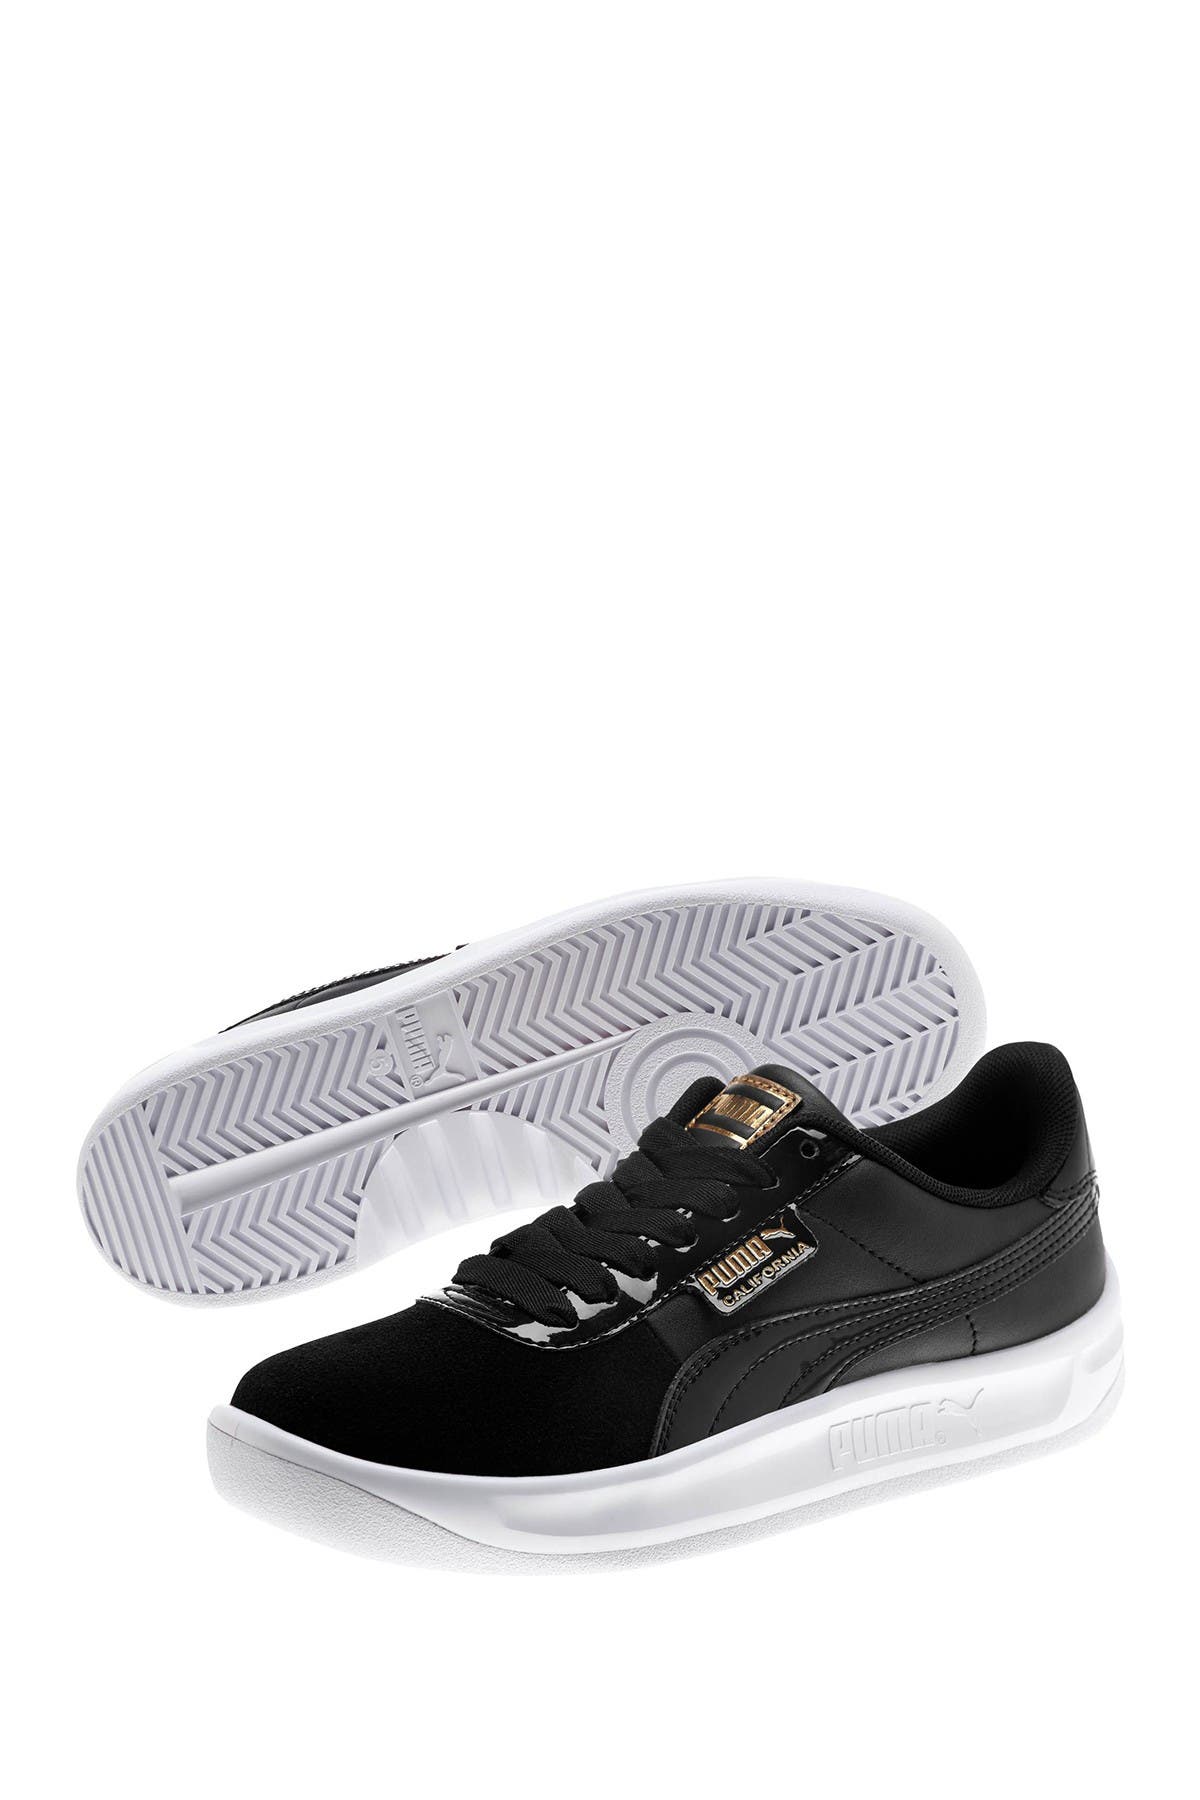 PUMA | California Monochrome Sneaker 